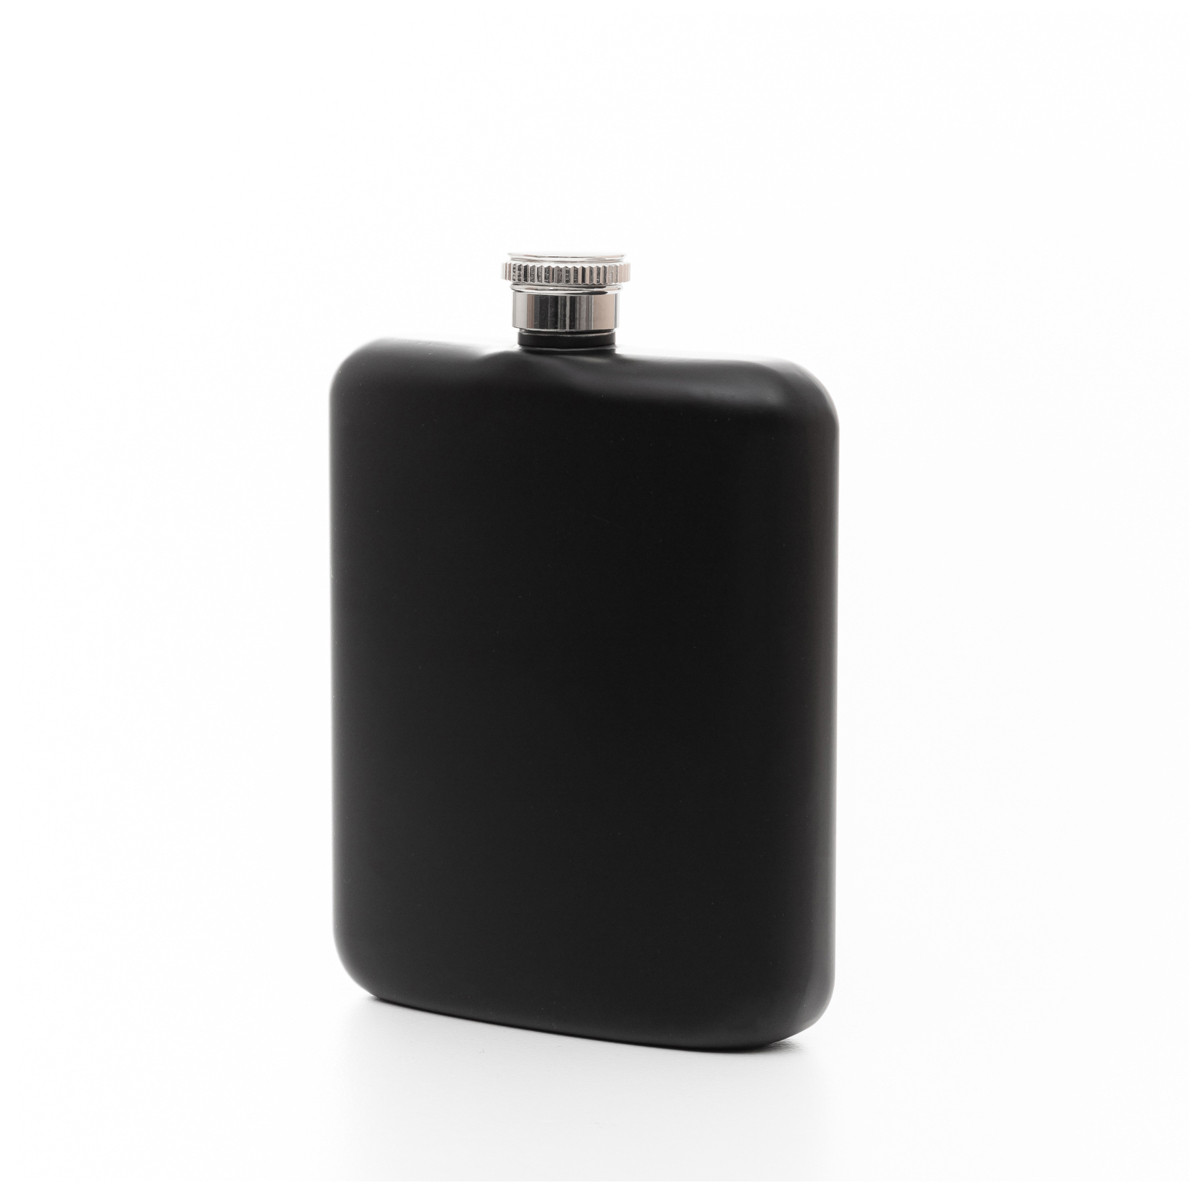 Ploskačka ALCOLE FLASK černá ALL 849577 240 ml